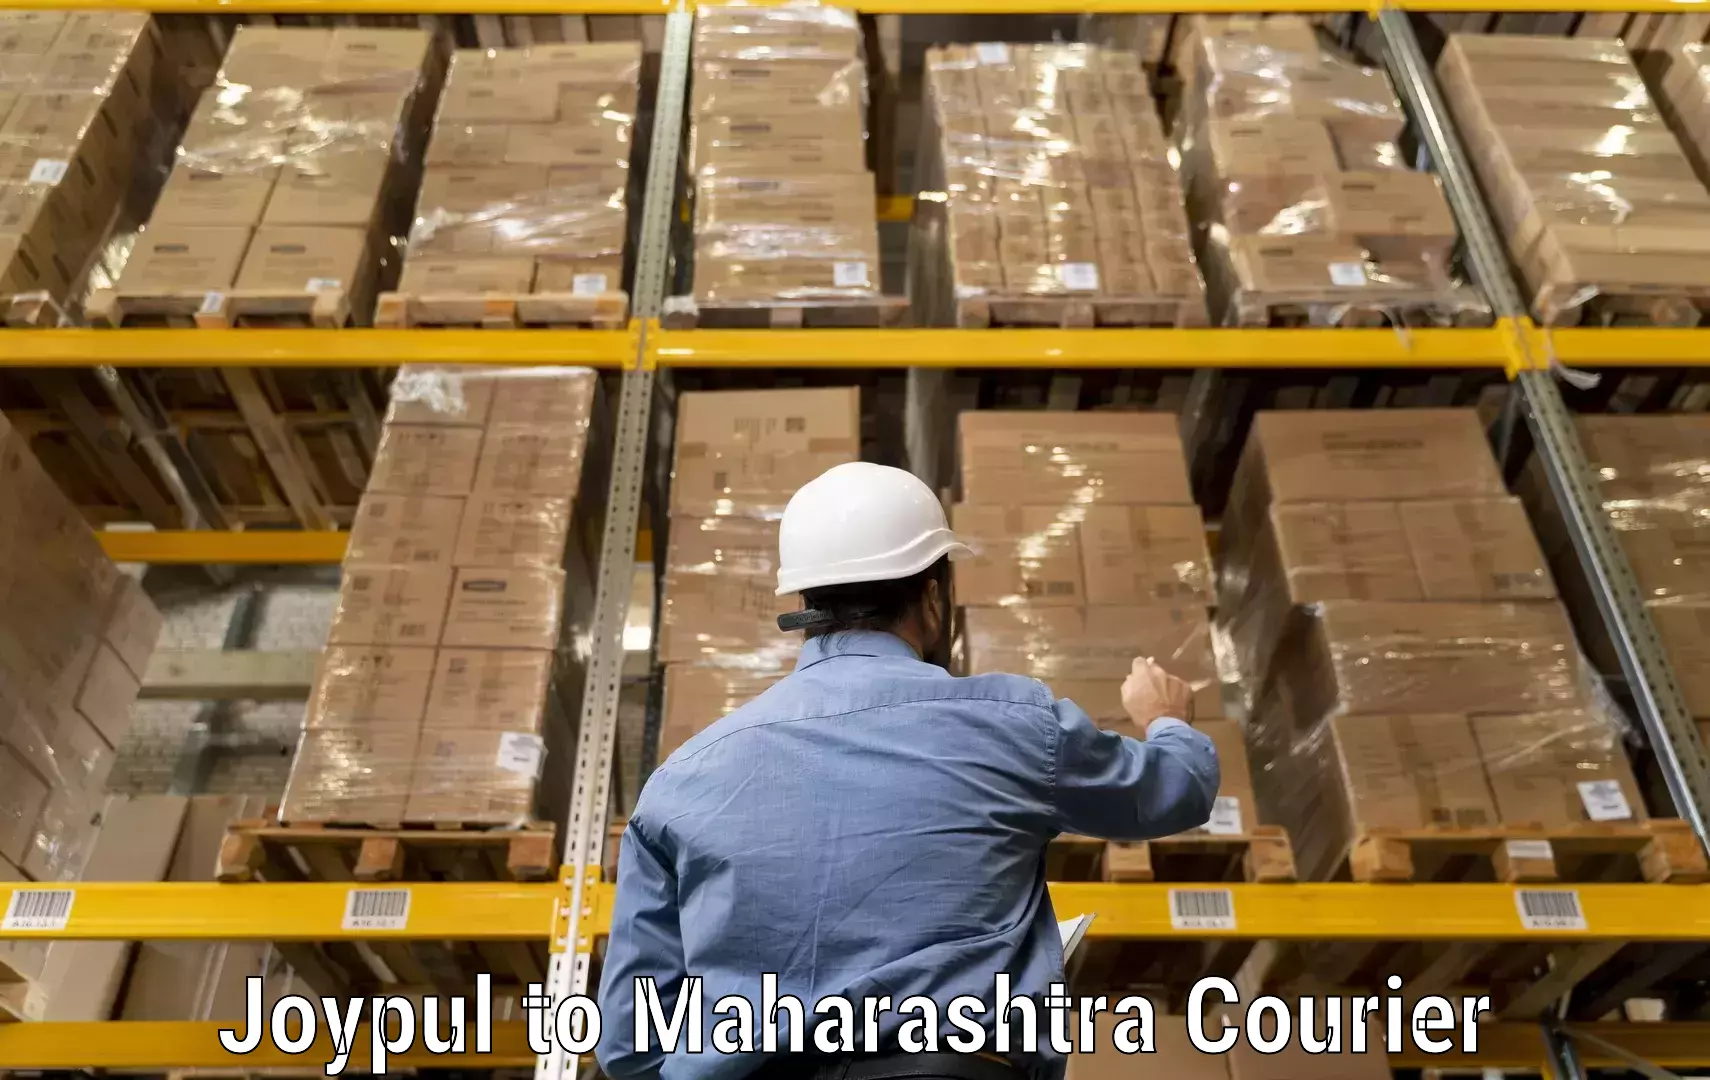 Large-scale shipping solutions Joypul to Maharashtra